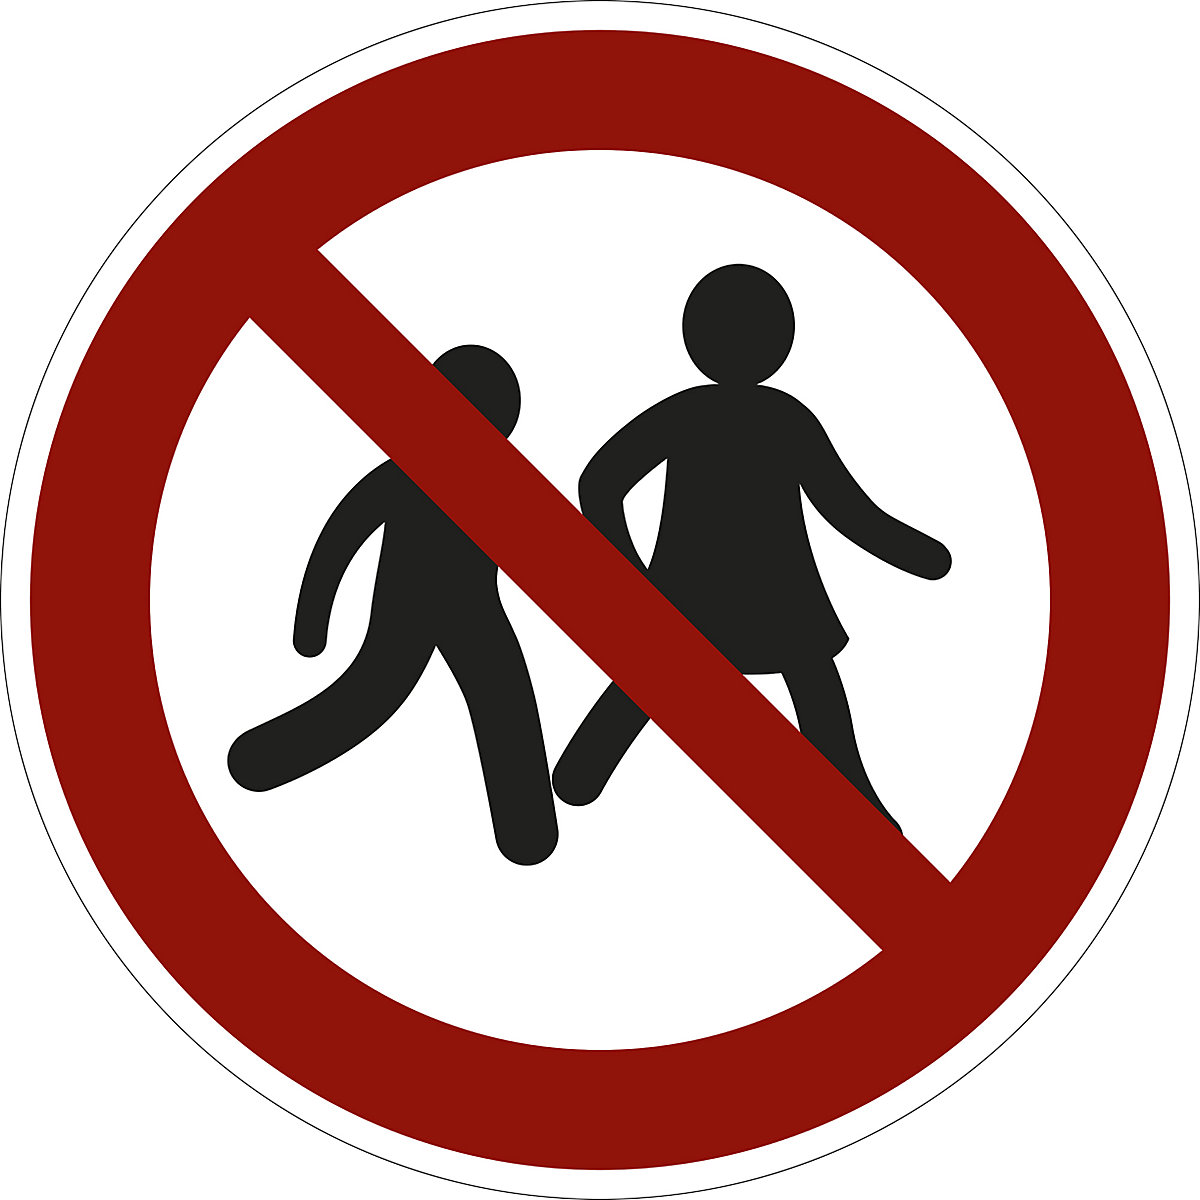 Zákazová značka, Dětem vstup zakázán, bal.j. 10 ks, fólie, Ø 200 mm